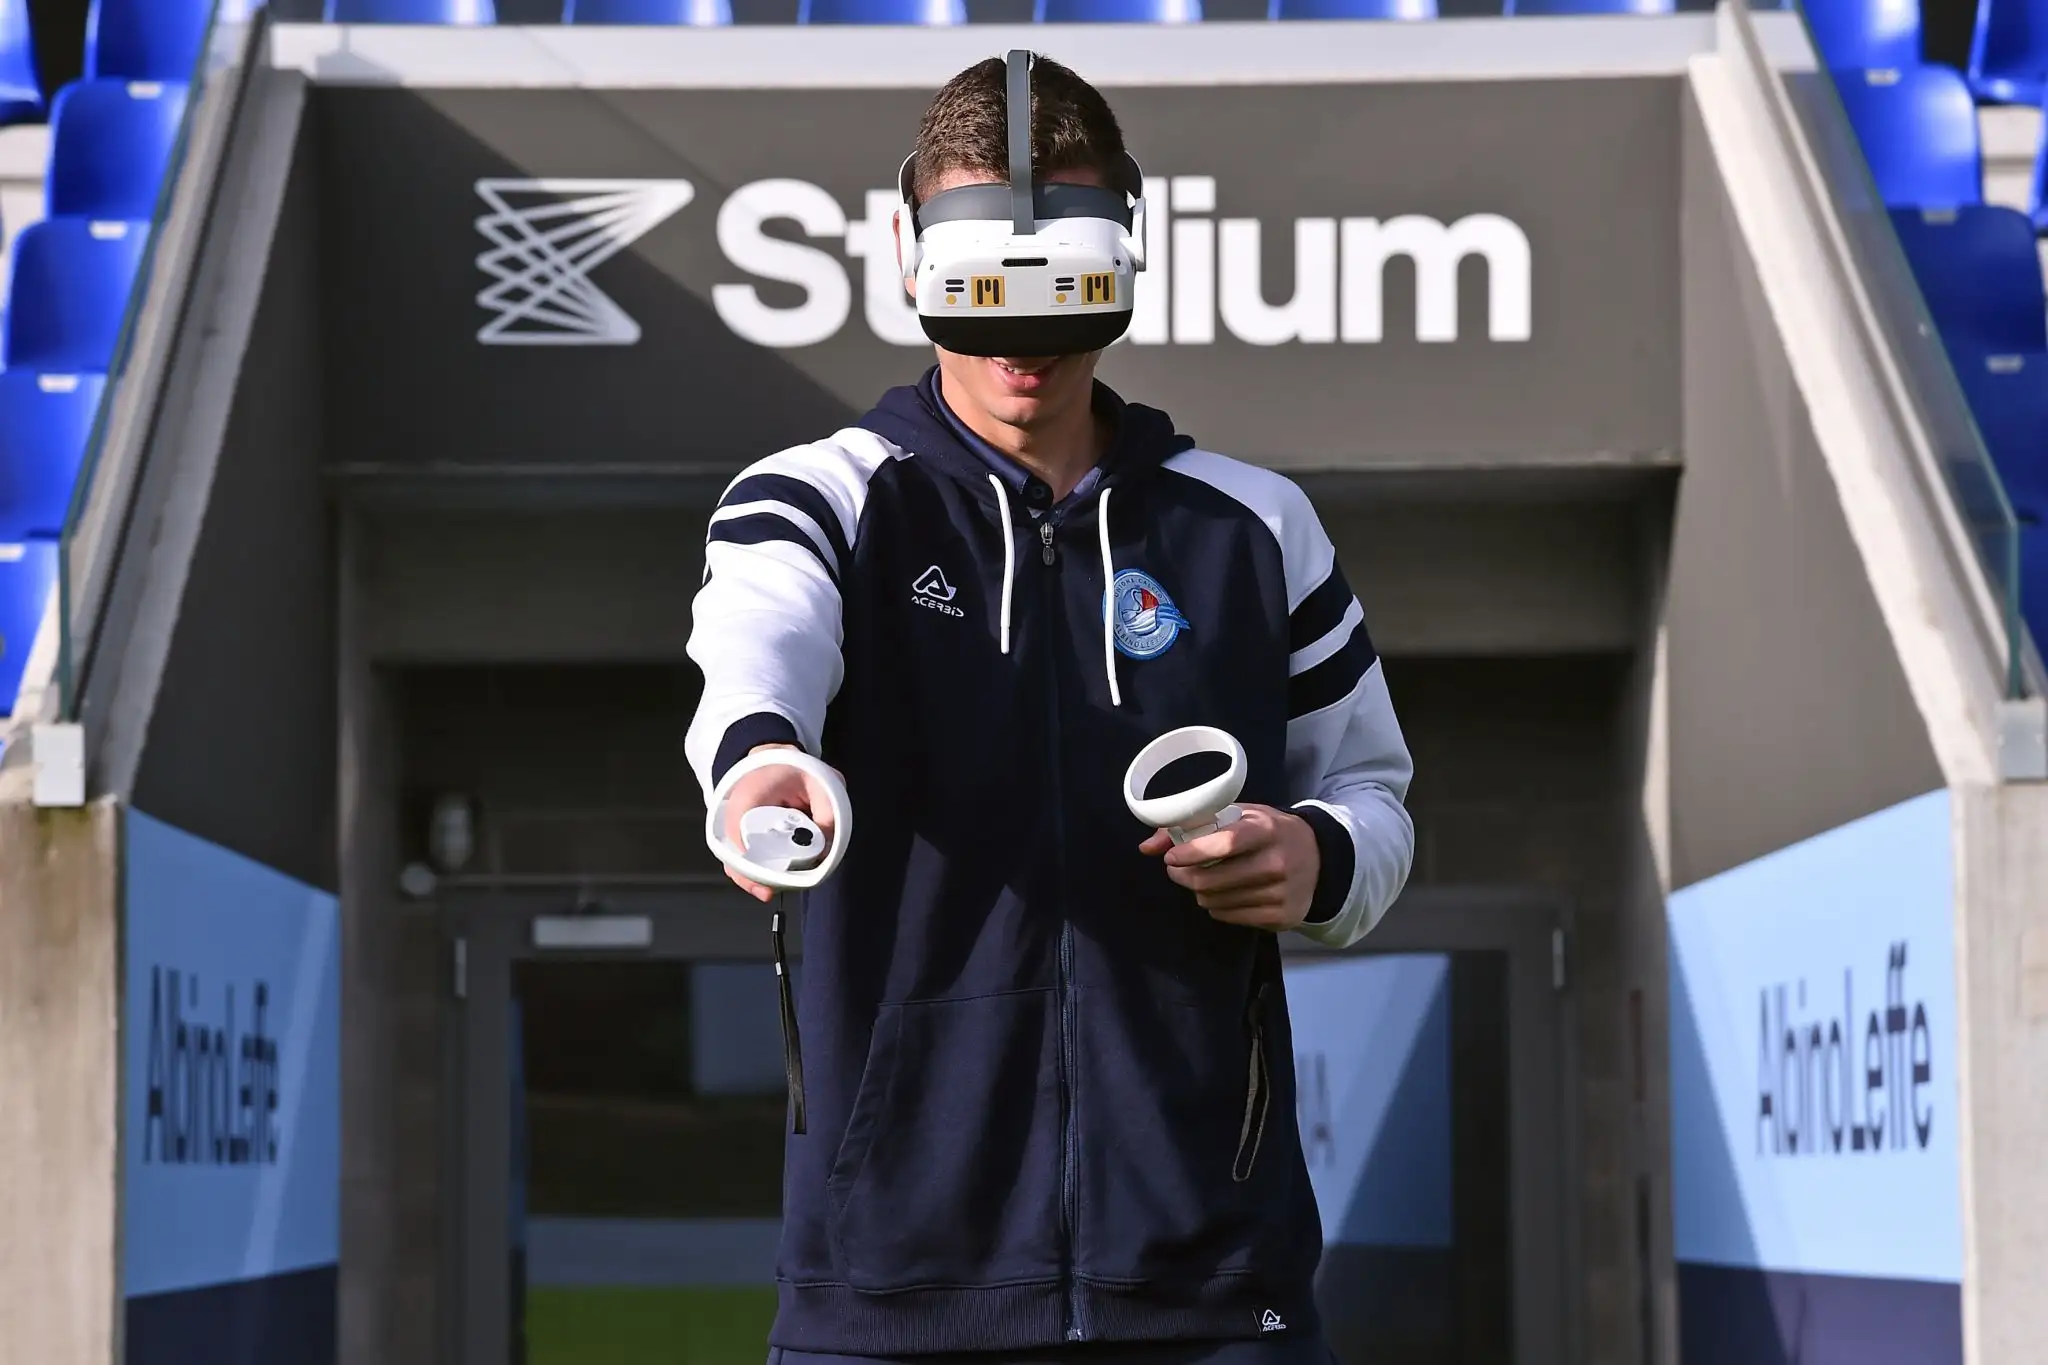 Allenamento sportivo e test dei riflessi con realtà virtuale